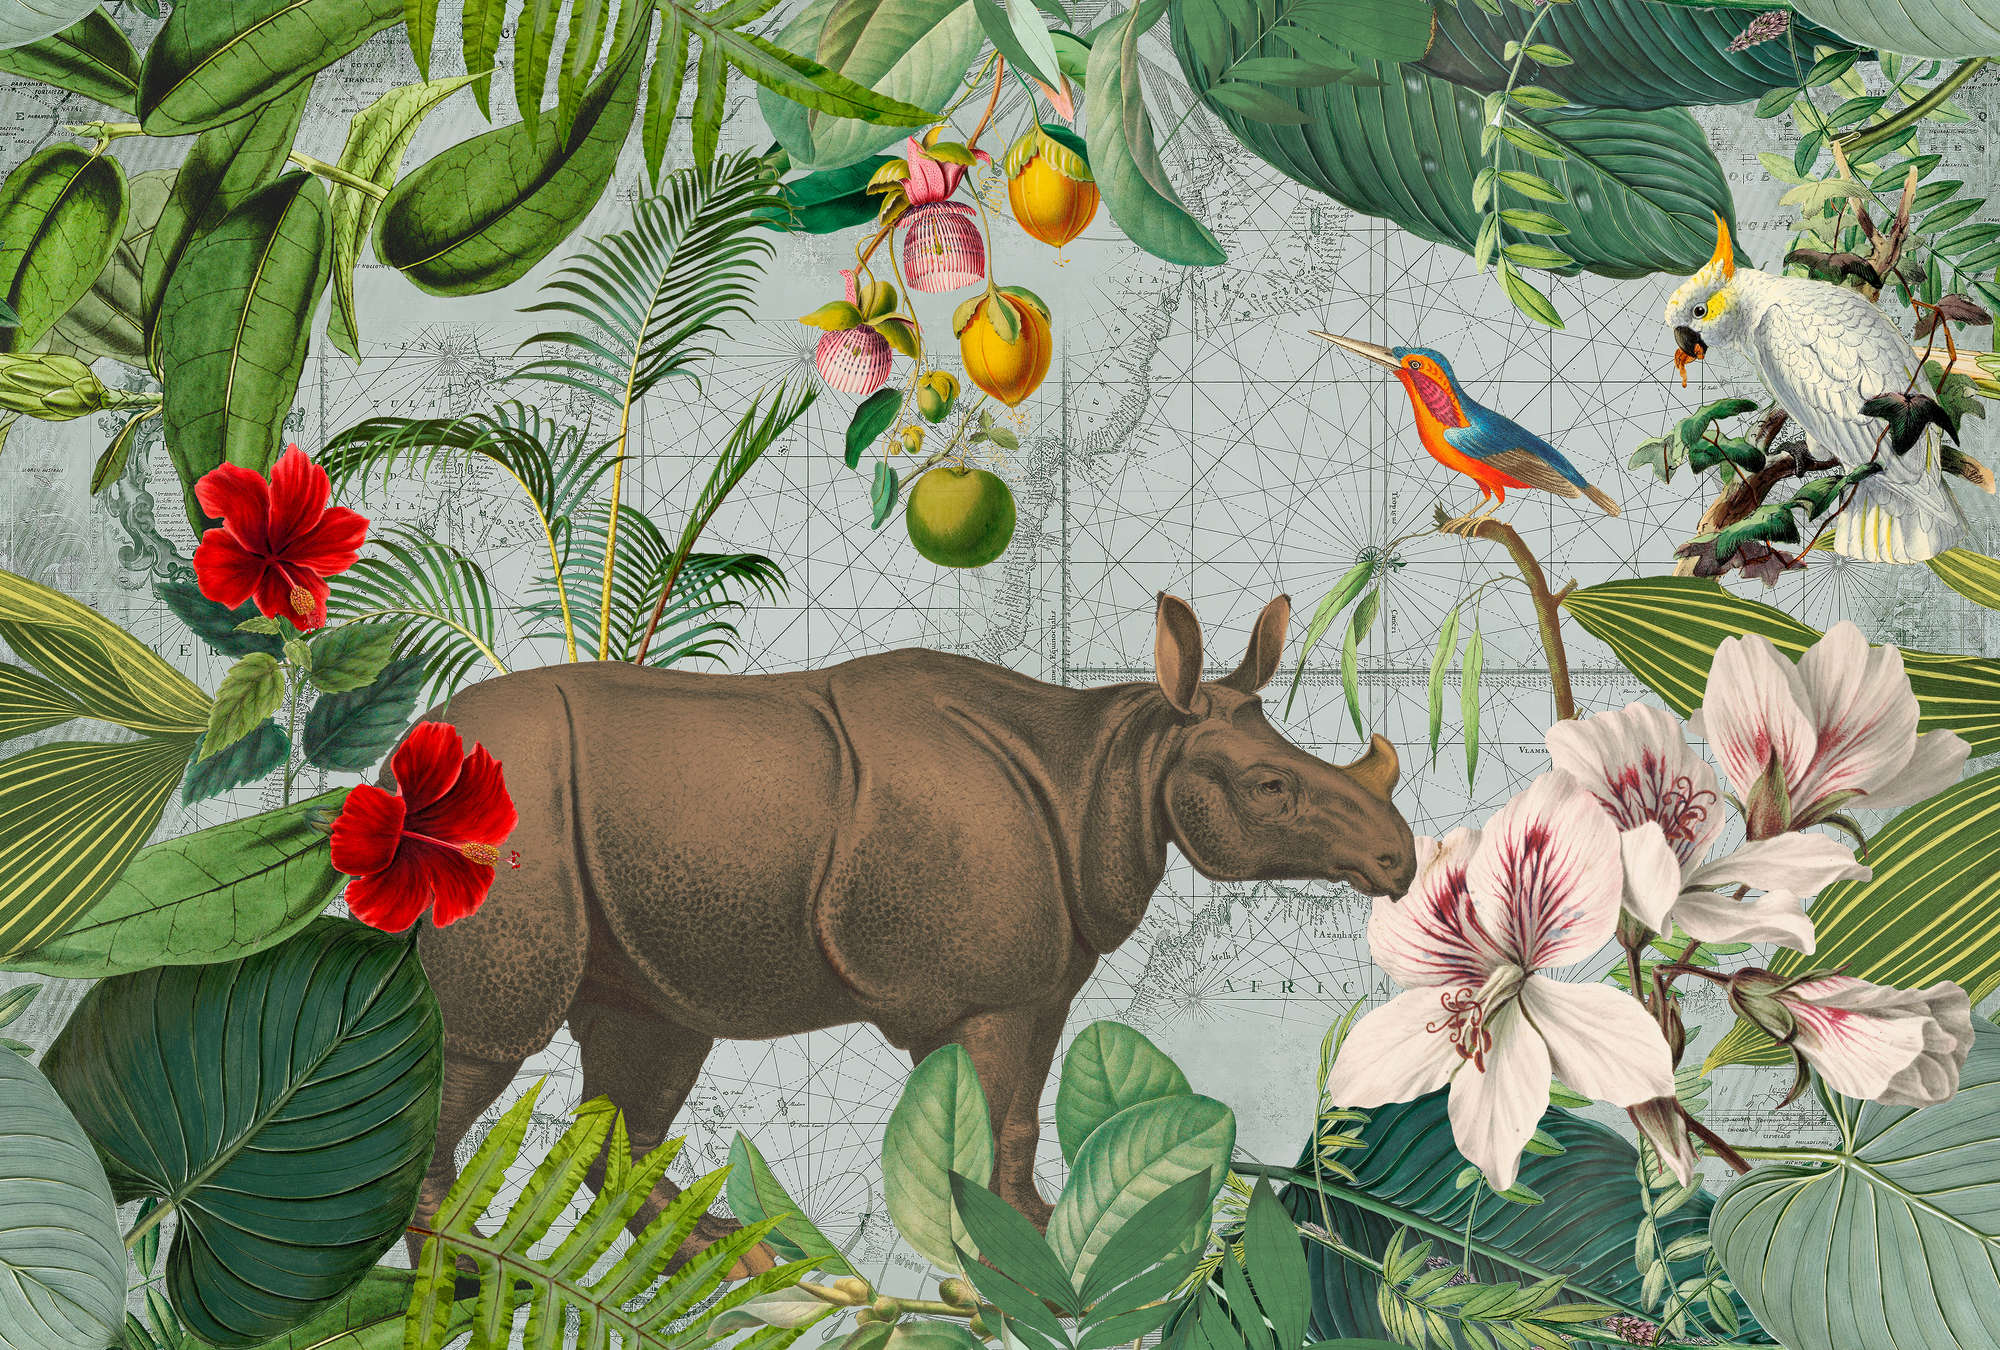             Rinoceronte in stile retrò con carta da parati a collage della giungla
        